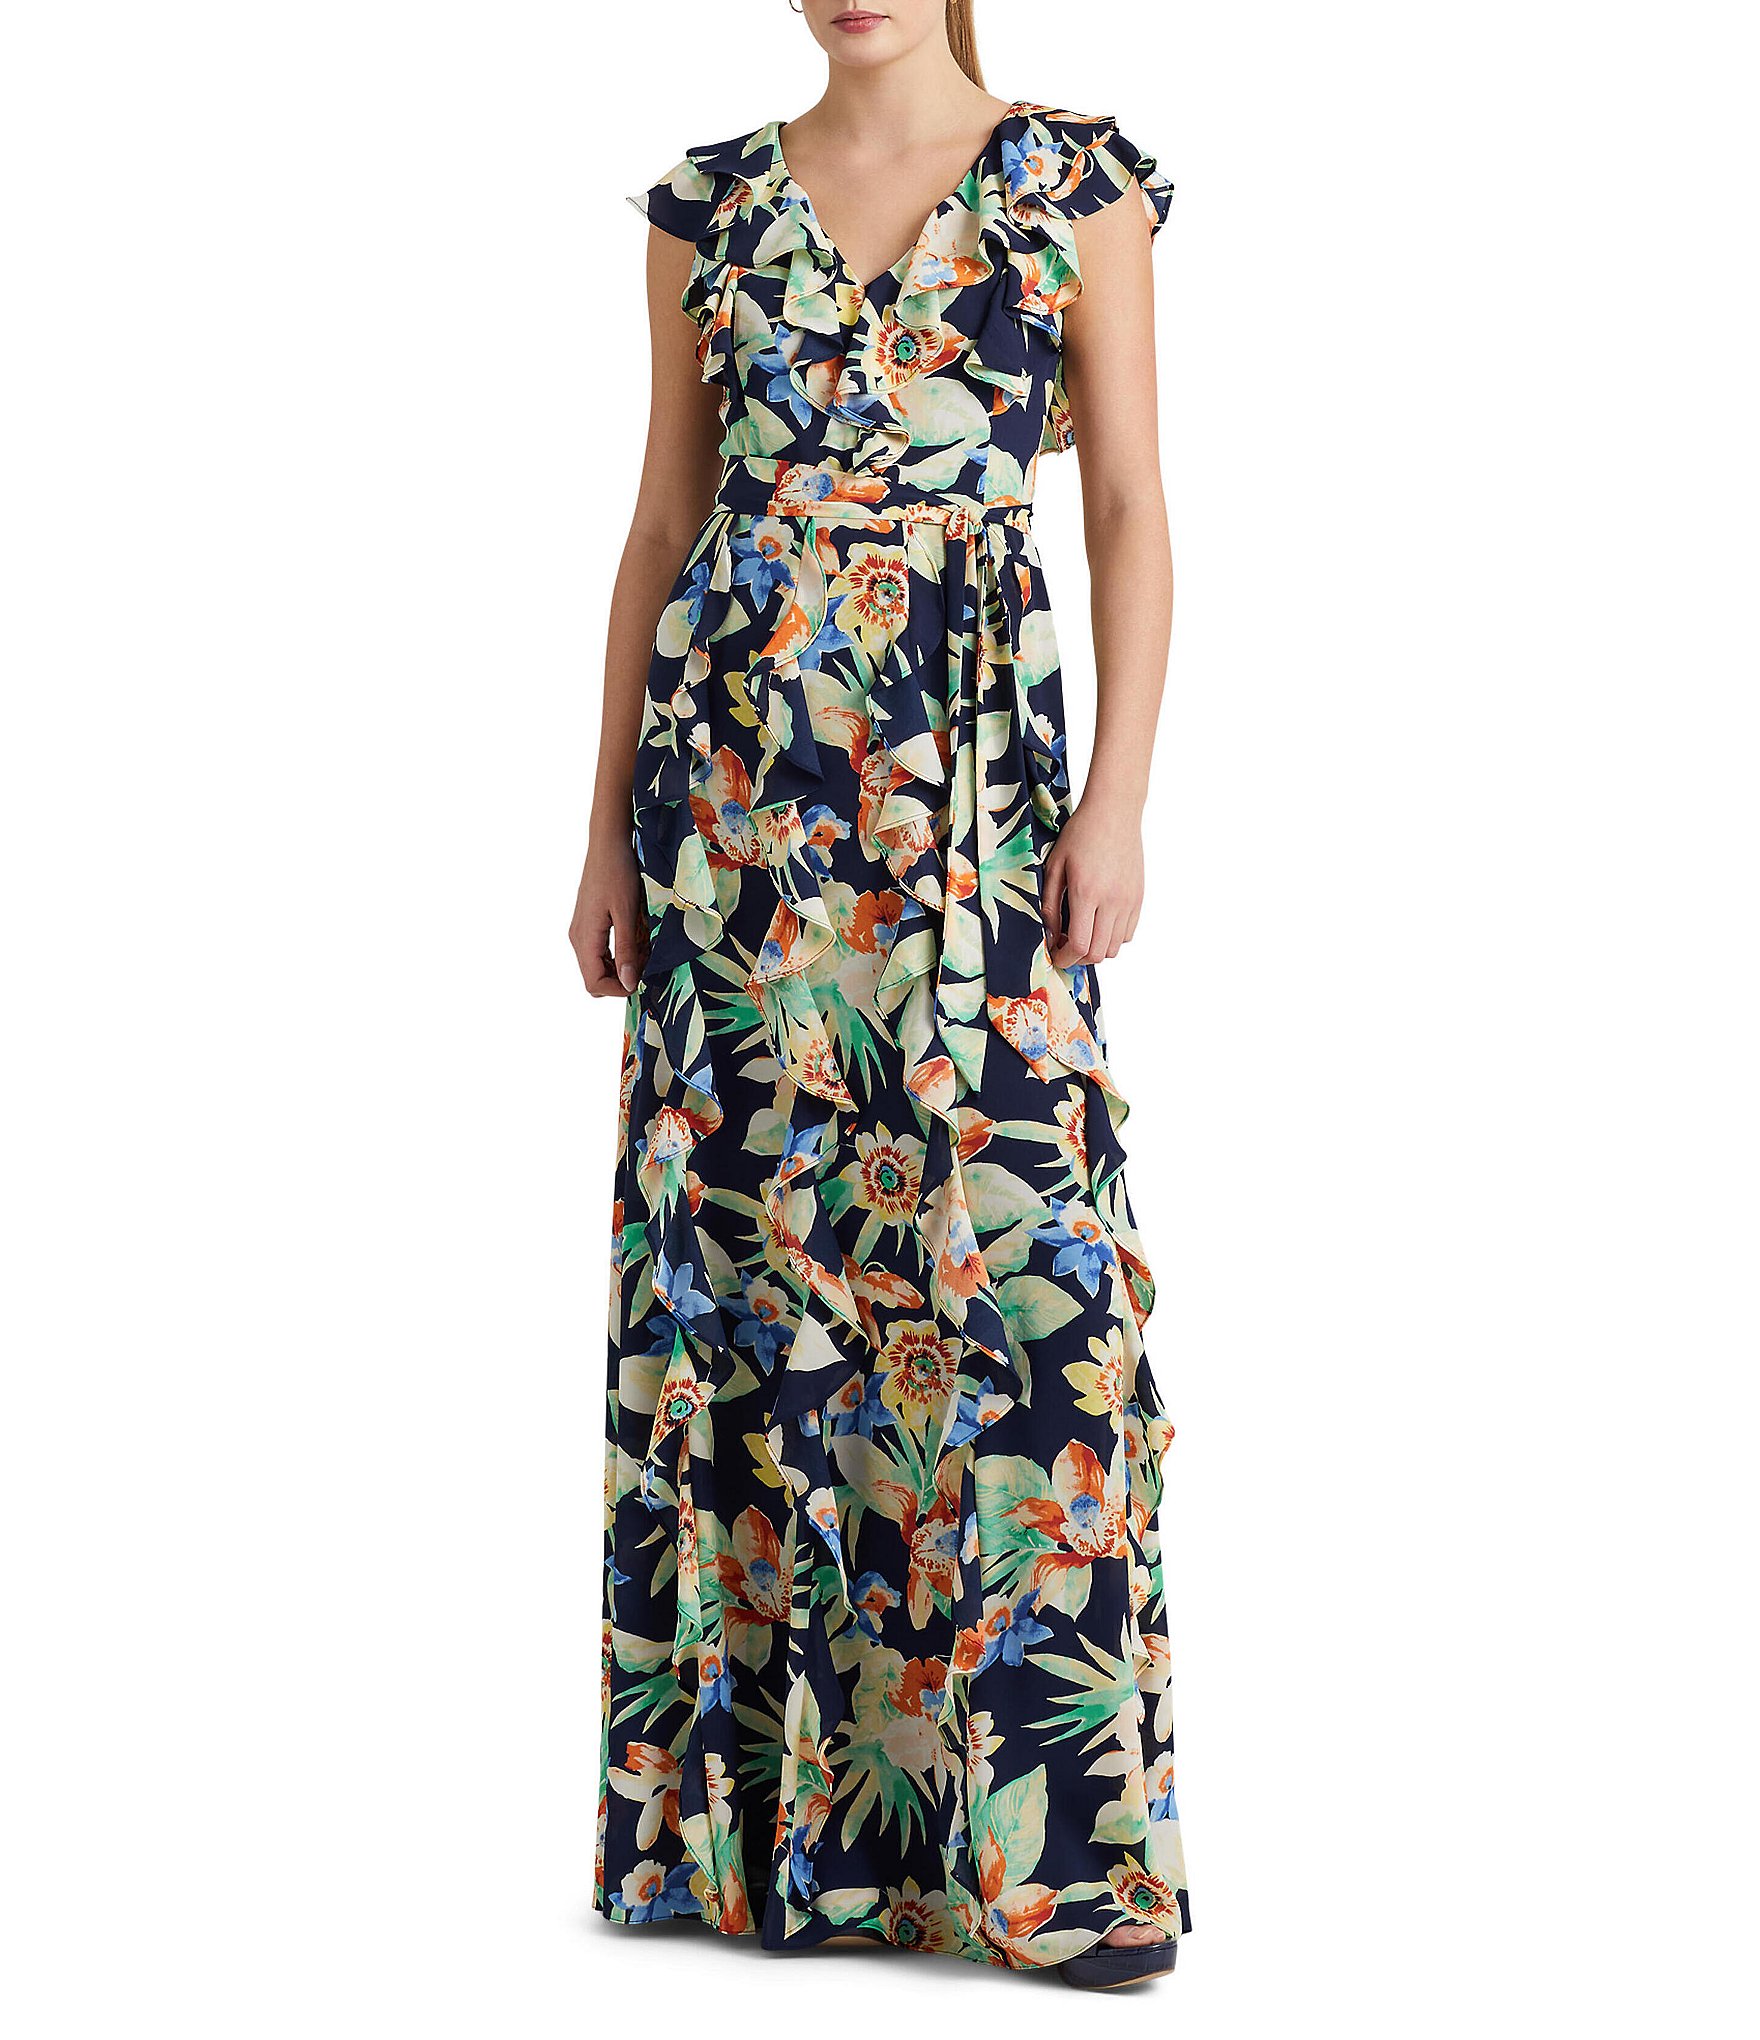 Lauren Ralph Lauren Floral Print Ruffle Trim V-Neck A-Line Dress | Dillard's